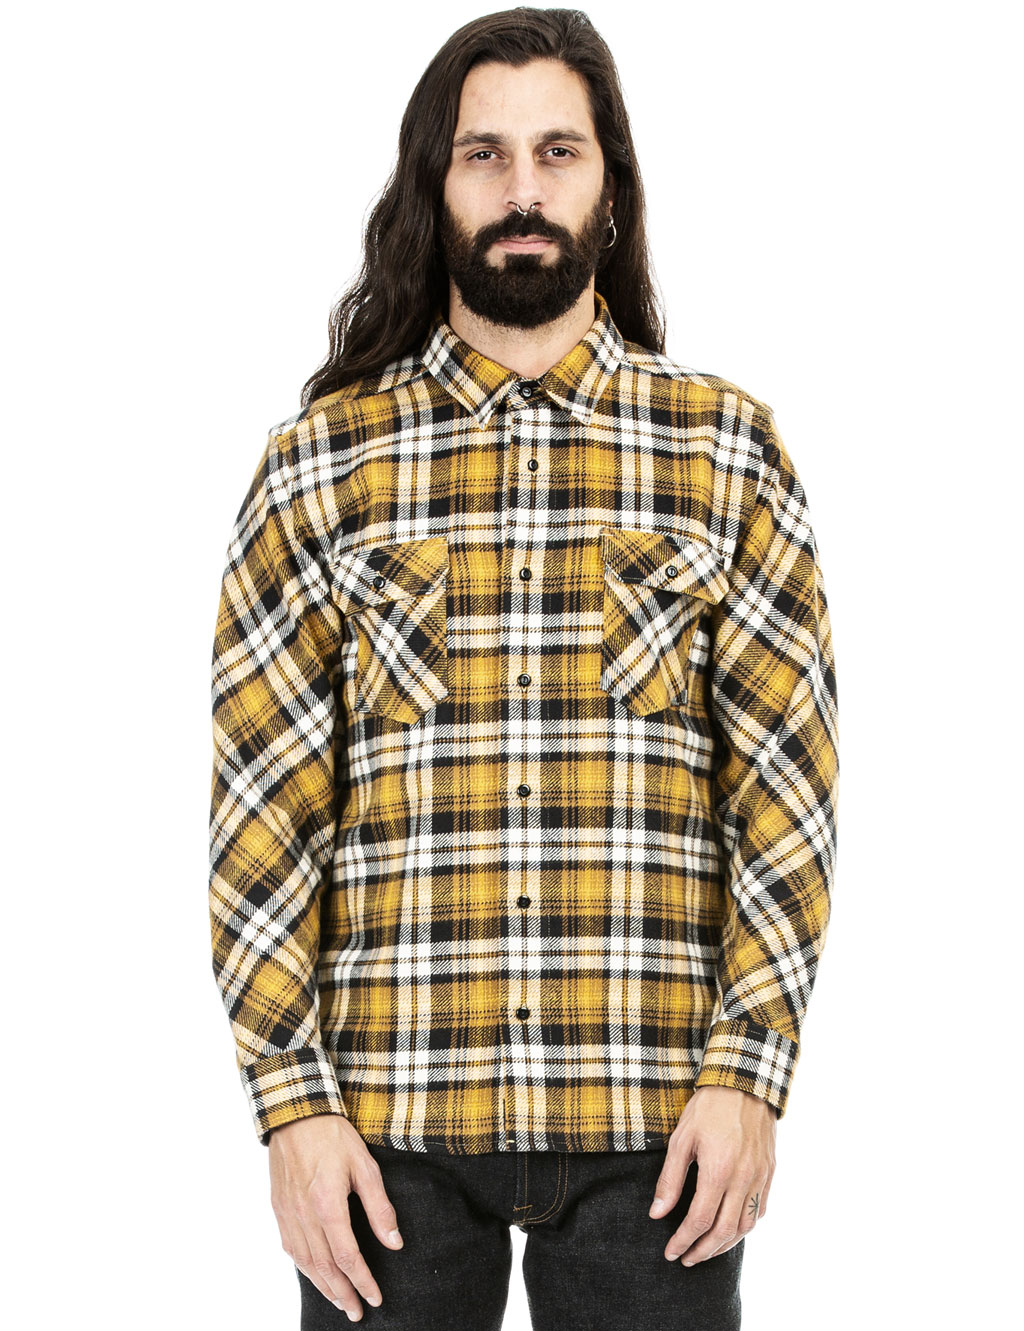 Indigofera - Bryson Check Flannel Shirt - Black/Beige/Gold